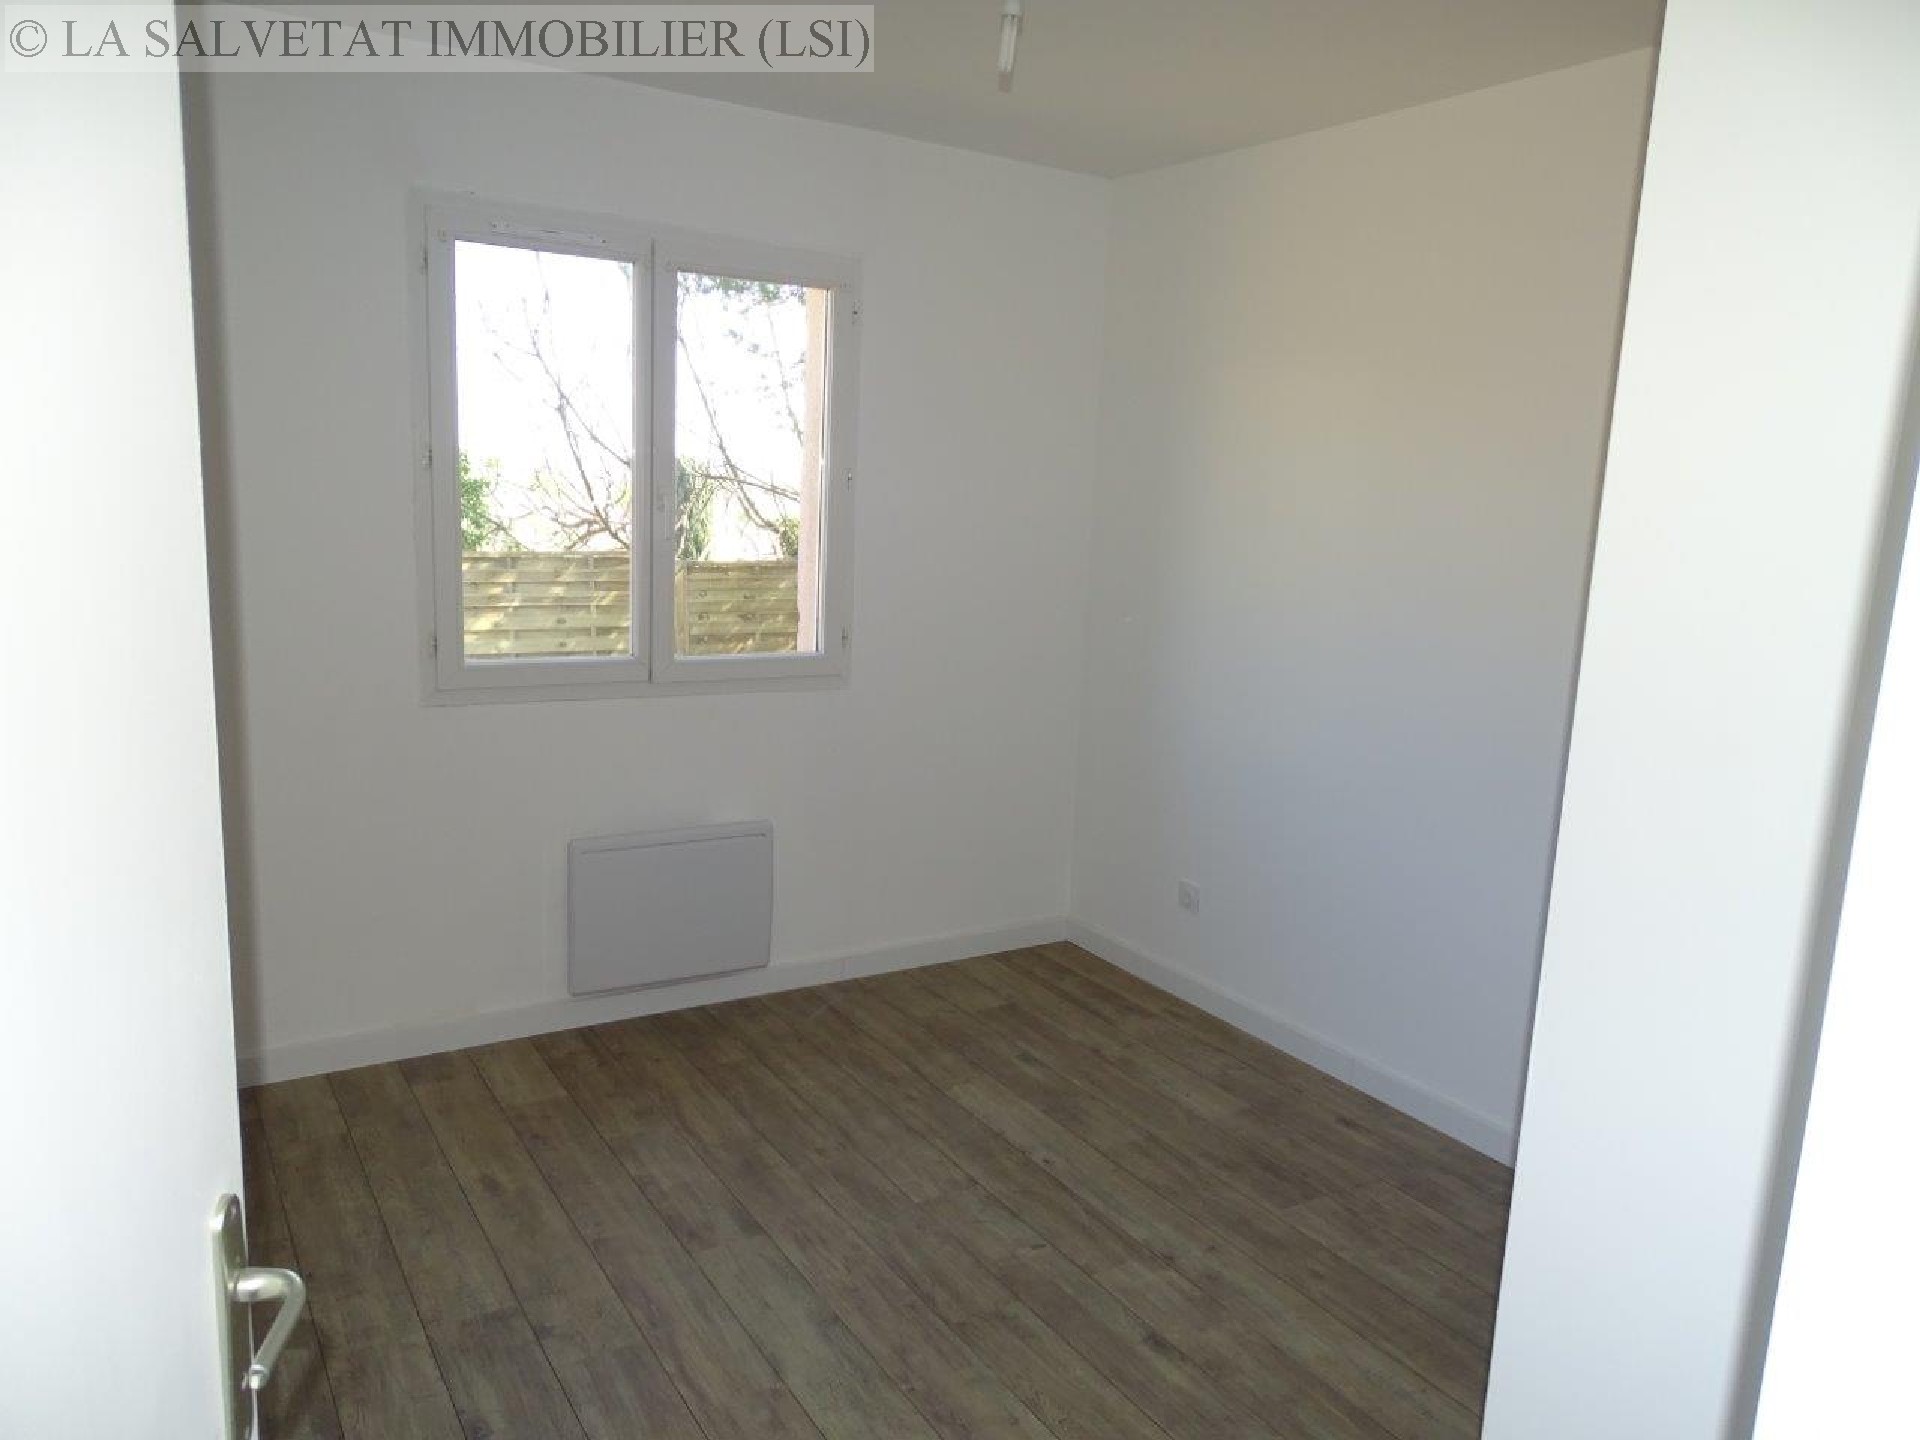 Vente maison-villa - COLOMIERS<br>94 m², 4 pièces